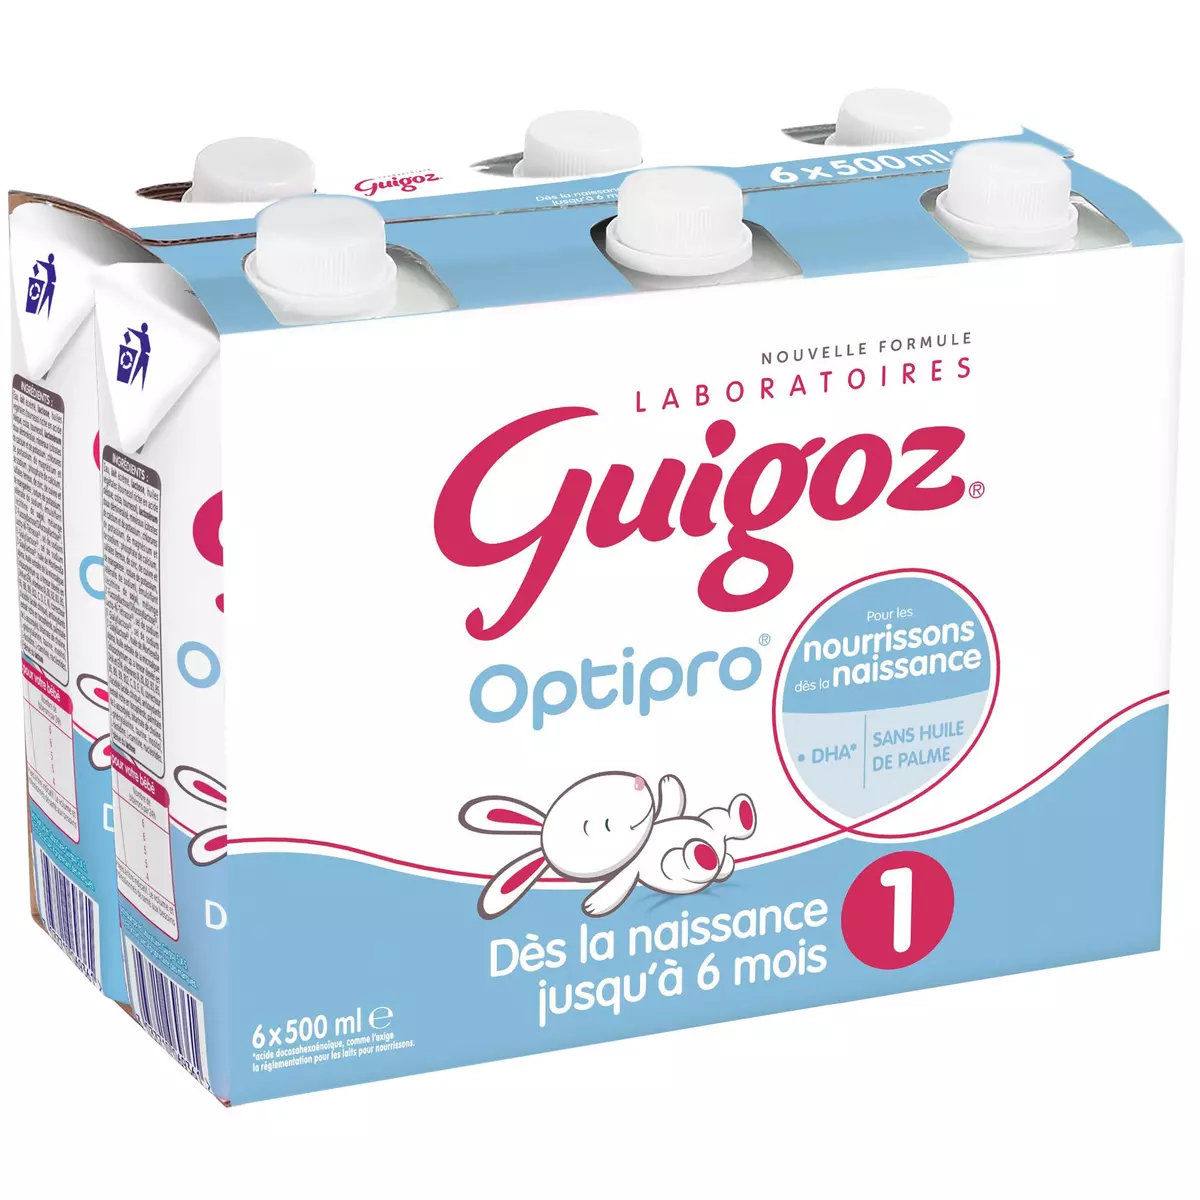 French Click - Guigoz Lait 1er Age des la Naissance 800g